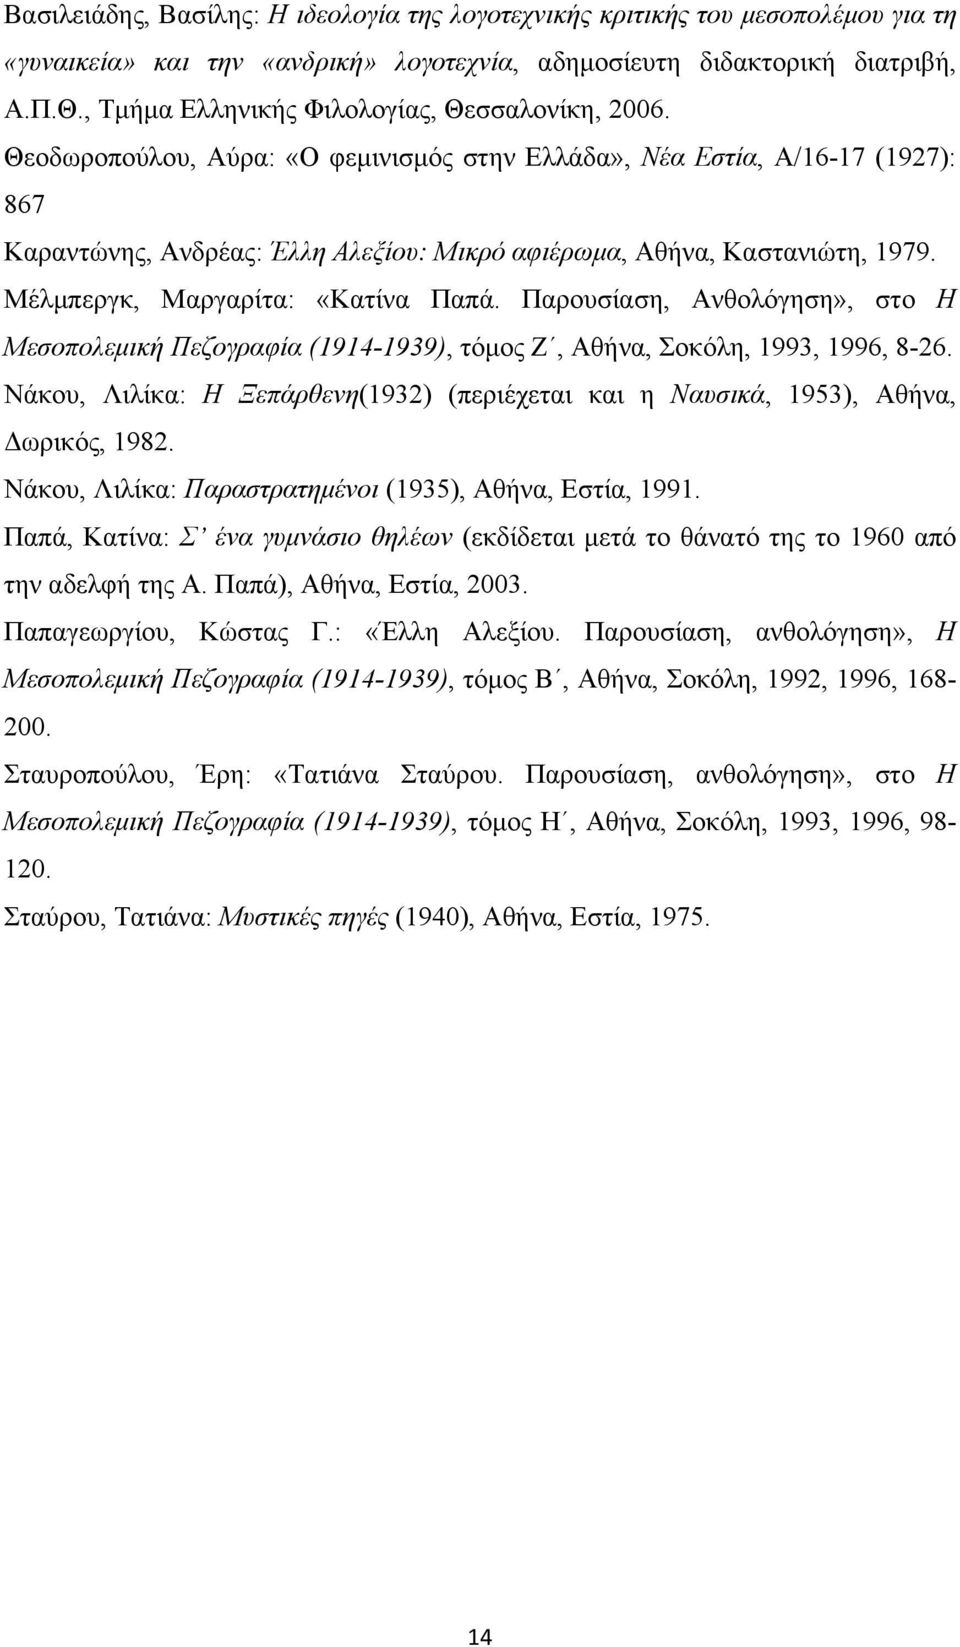 Θεοδωροπούλου, Αύρα: «Ο φεµινισµός στην Ελλάδα», Νέα Εστία, Α/16-17 (1927): 867 Καραντώνης, Ανδρέας: Έλλη Αλεξίου: Μικρό αφιέρωµα, Αθήνα, Καστανιώτη, 1979. Μέλµπεργκ, Μαργαρίτα: «Κατίνα Παπά.